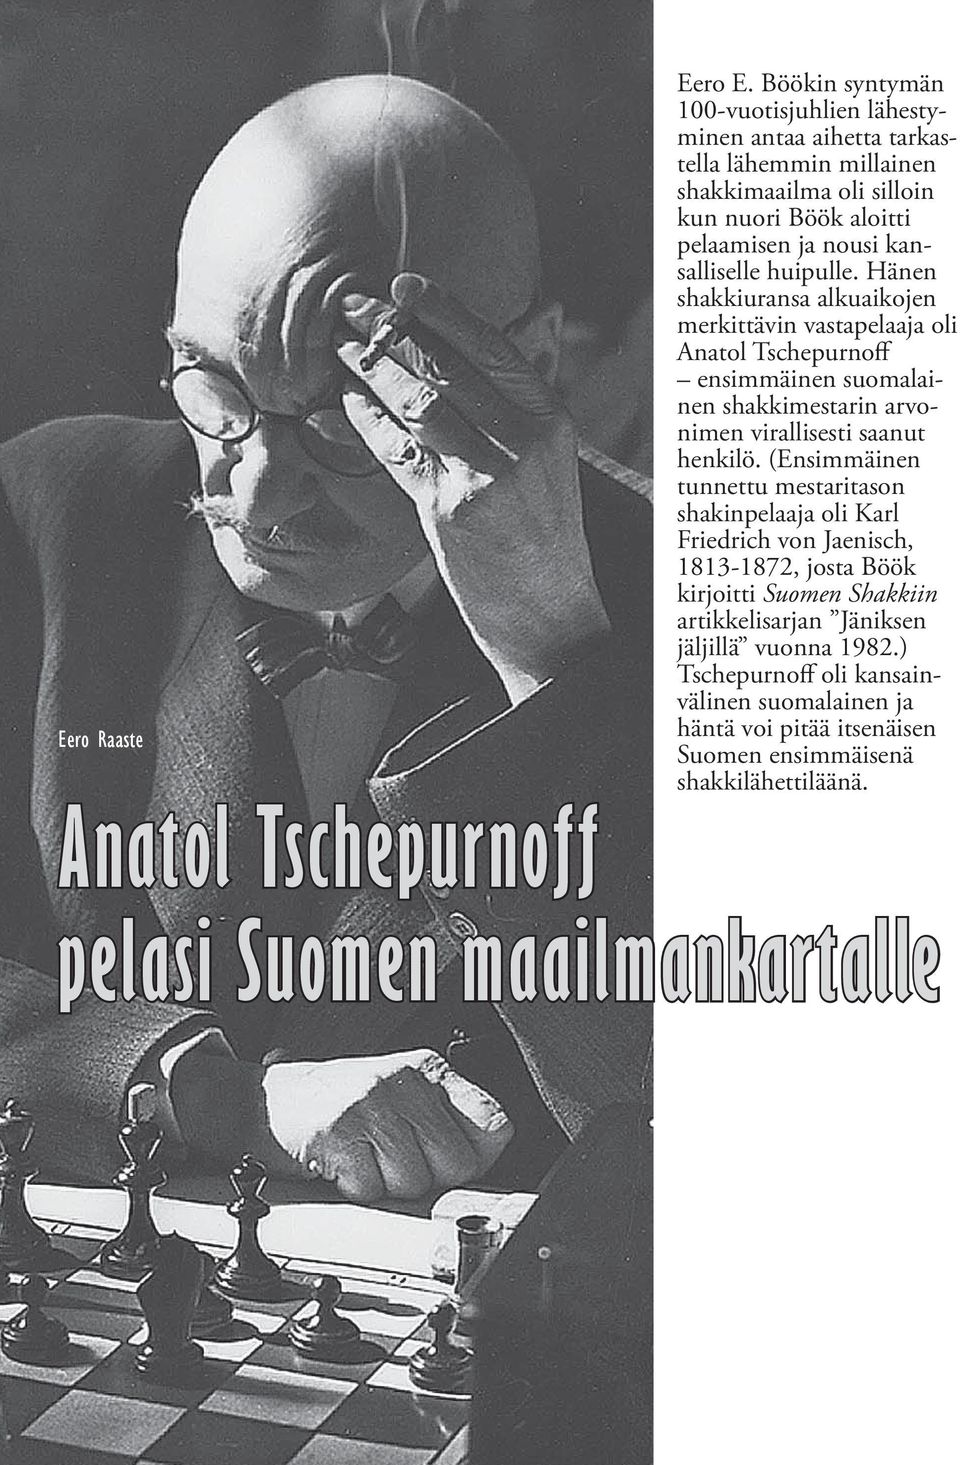 huipulle. Hänen shakkiuransa alkuaikojen merkittävin vastapelaaja oli Anatol Tschepurnoff ensimmäinen suomalainen shakkimestarin arvonimen virallisesti saanut henkilö.